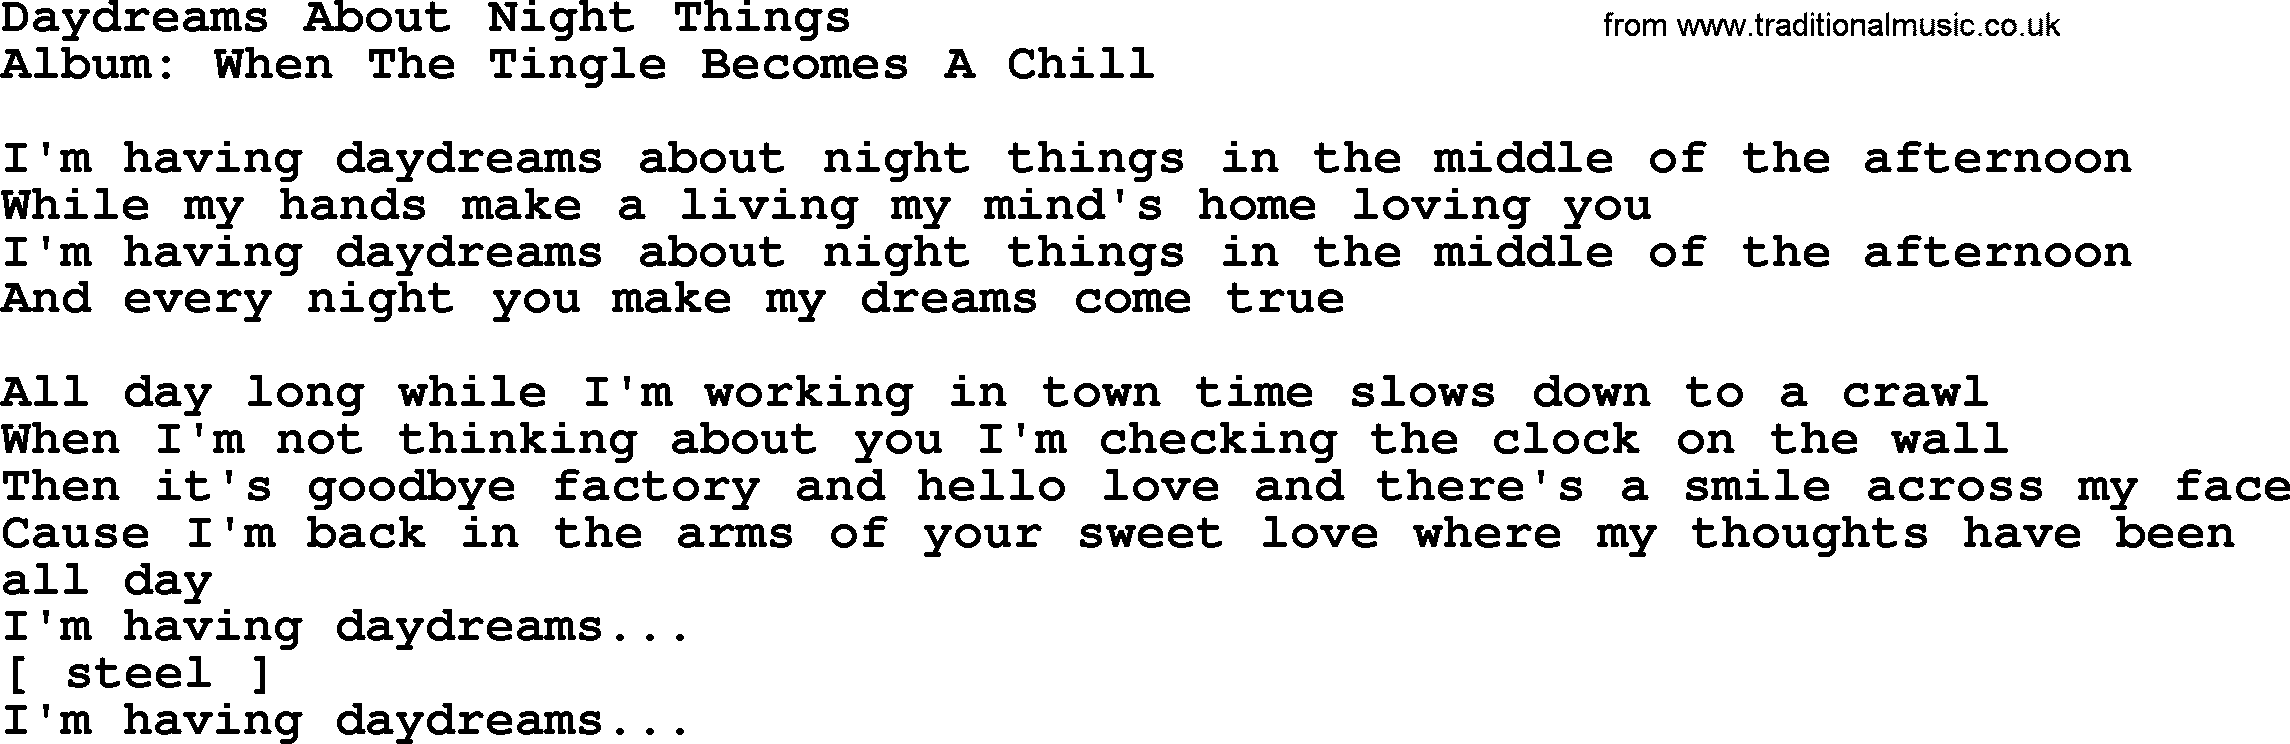 Loretta Lynn song: Daydreams About Night Things lyrics